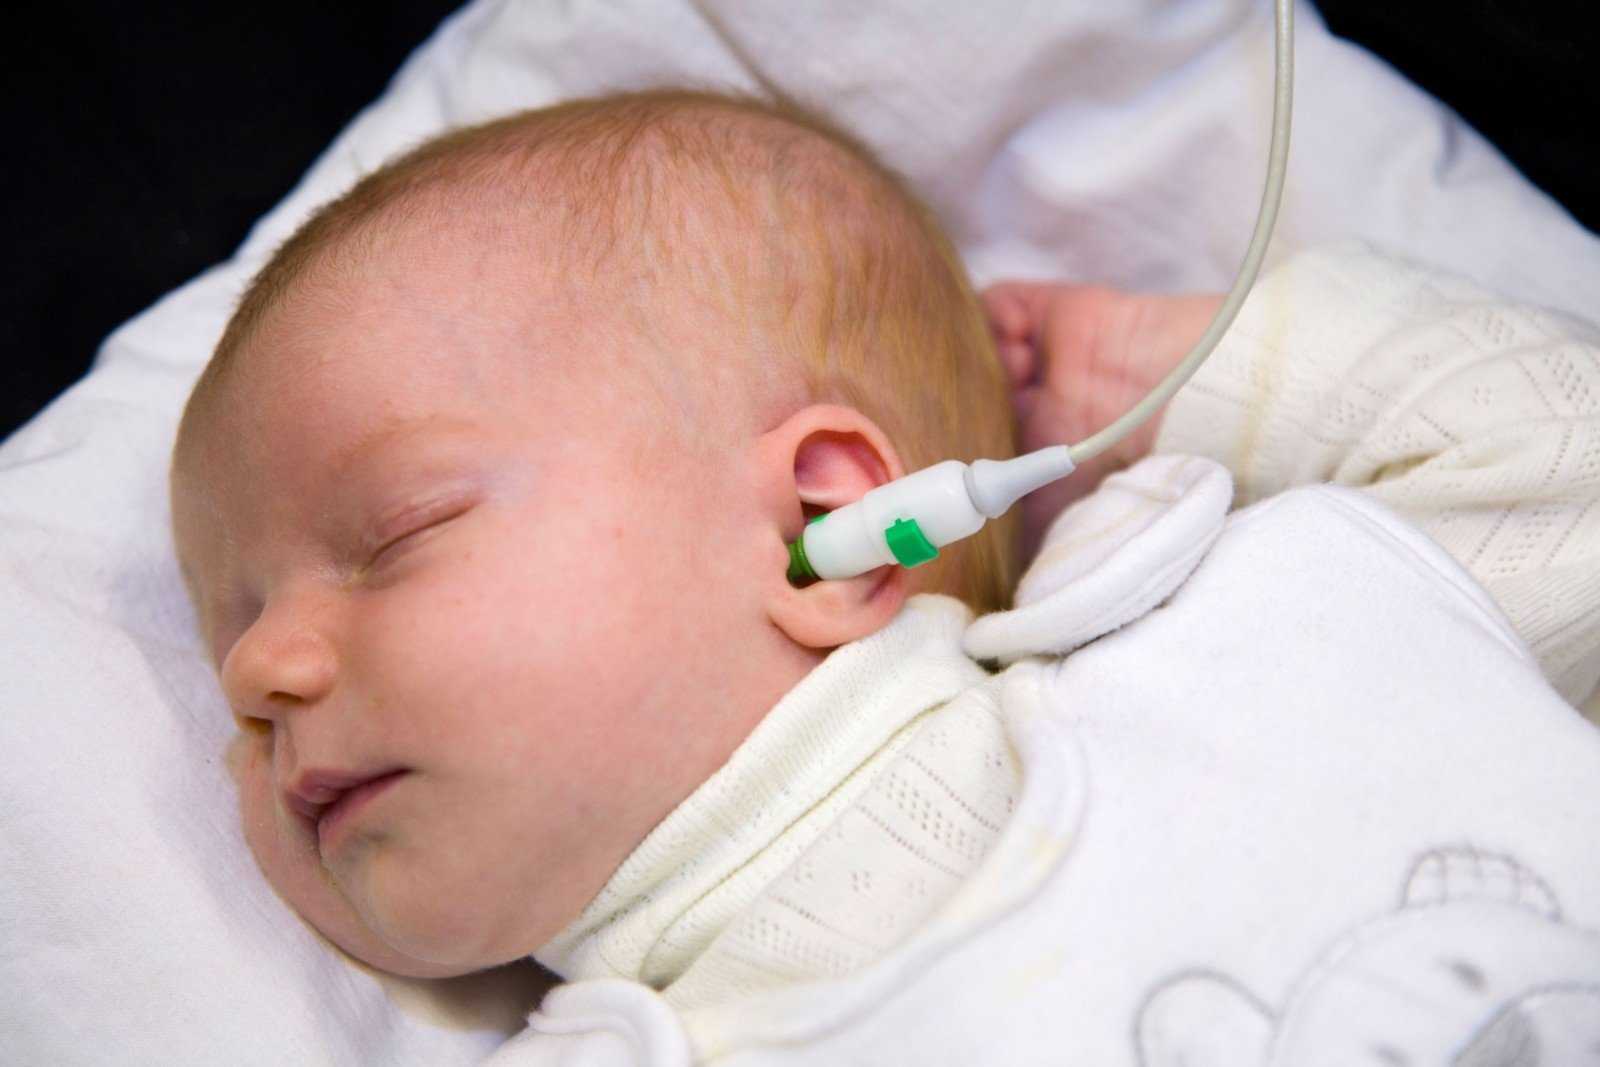 Глухота аномалия. Аудиоскрининг новорожденных. Патология слуха у новорожденных. Глухота новорожденных. Аудиологический скрининг новорожденных.